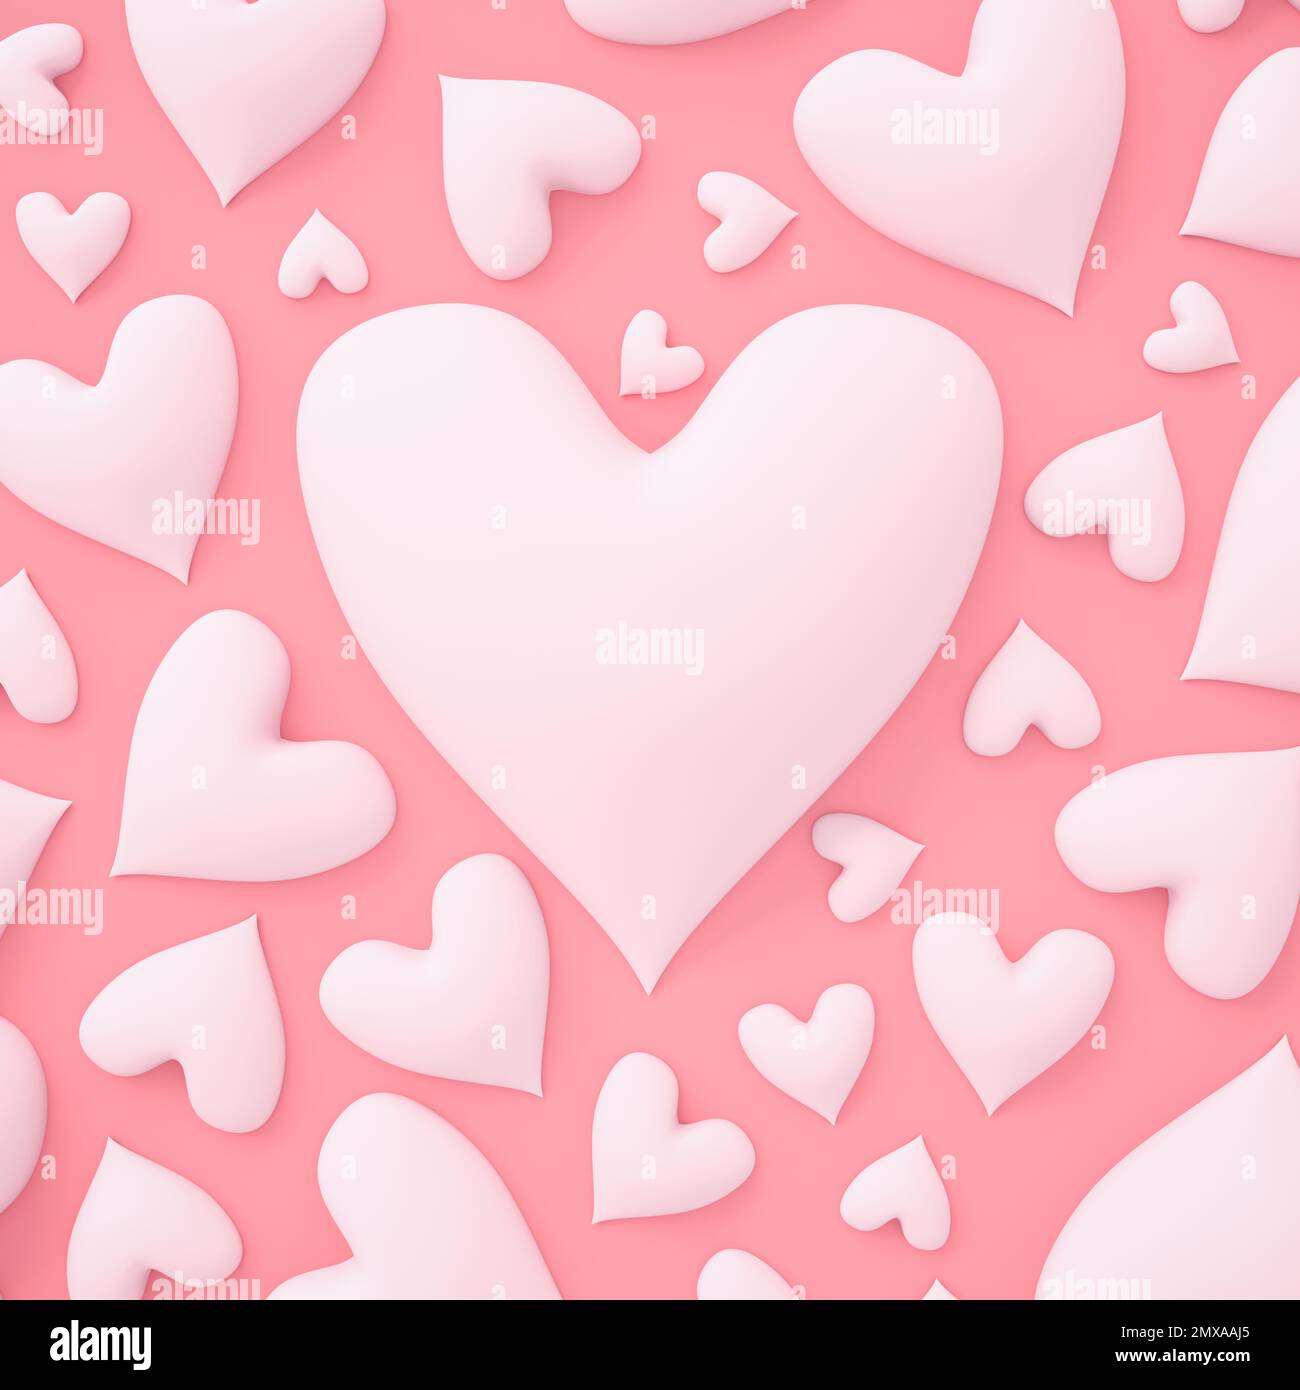 Coeurs blancs sur fond rose avec grand coeur central pour la Saint-Valentin ou d'autres thèmes romantiques. 3D rendu. Banque D'Images